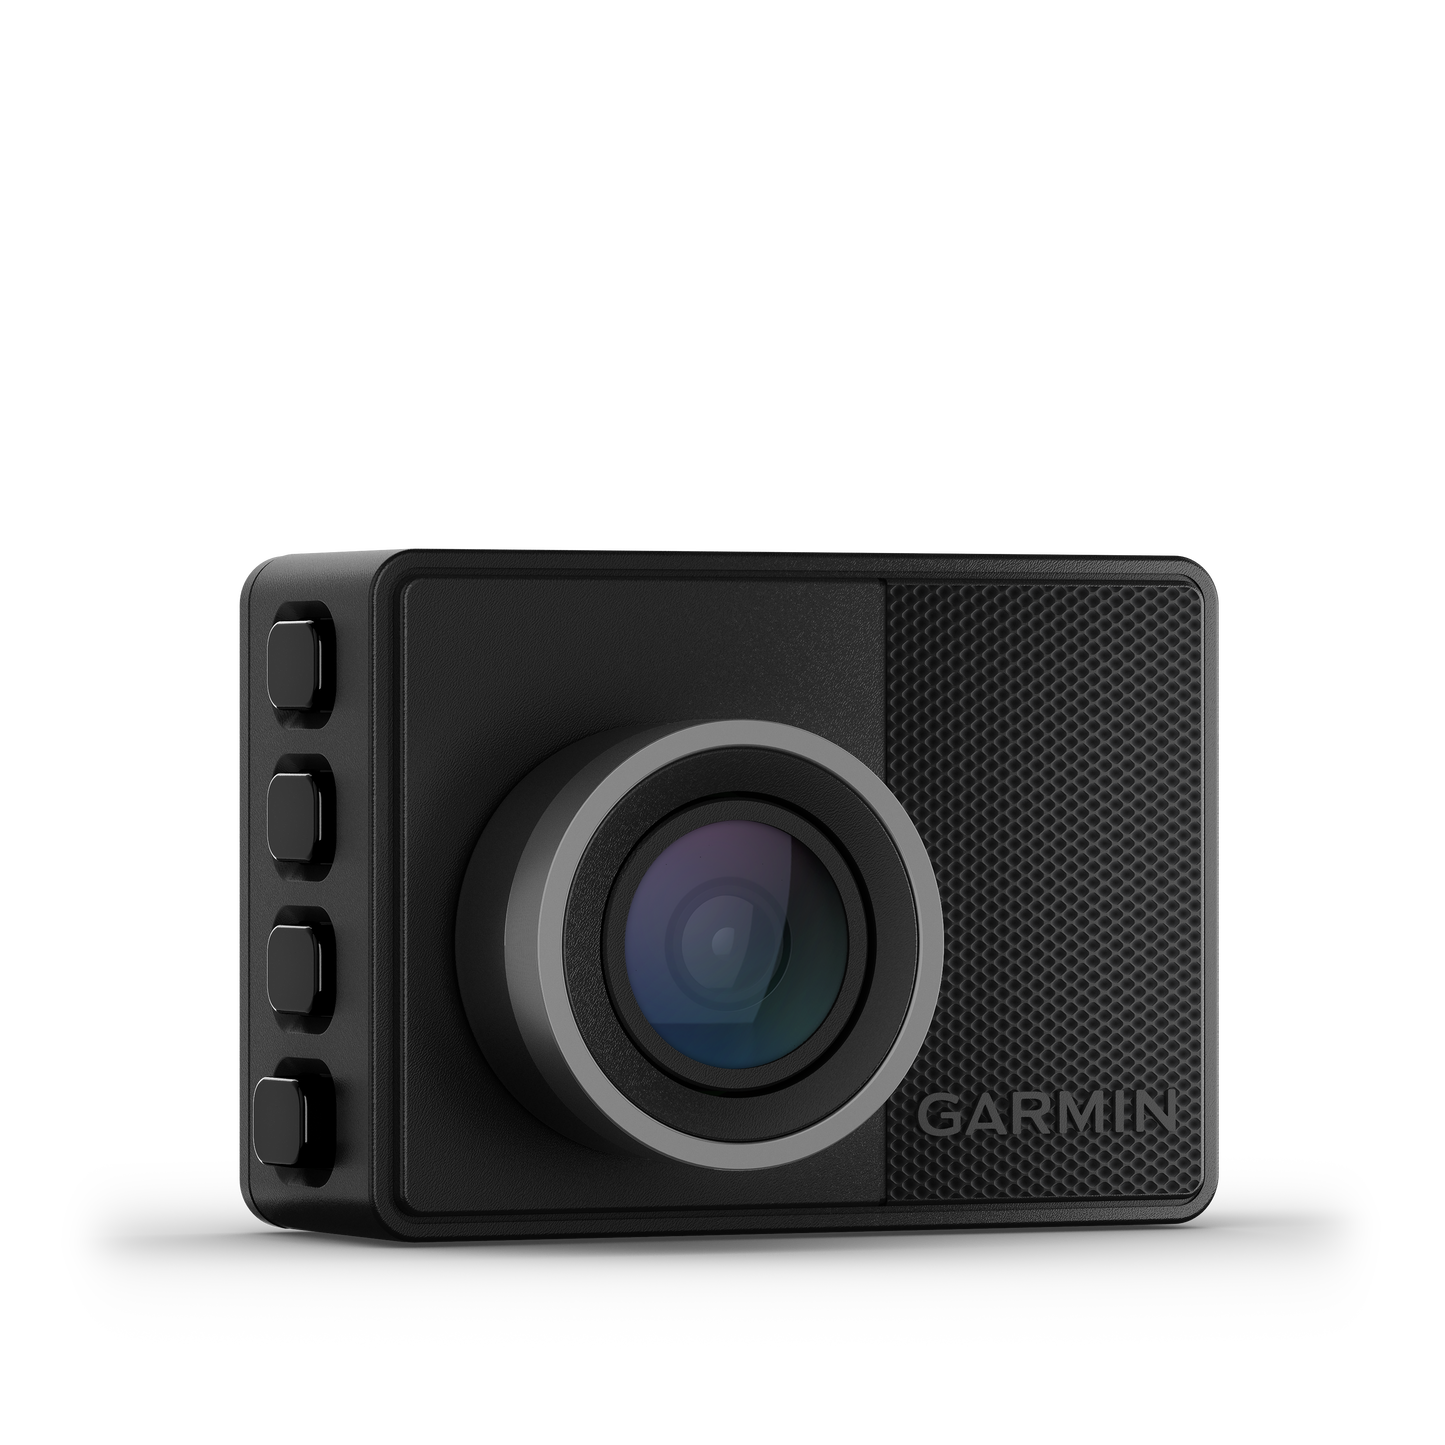 Garmin Dash Cam 57 Plug & Play Kit | '05 - '23 Tacoma